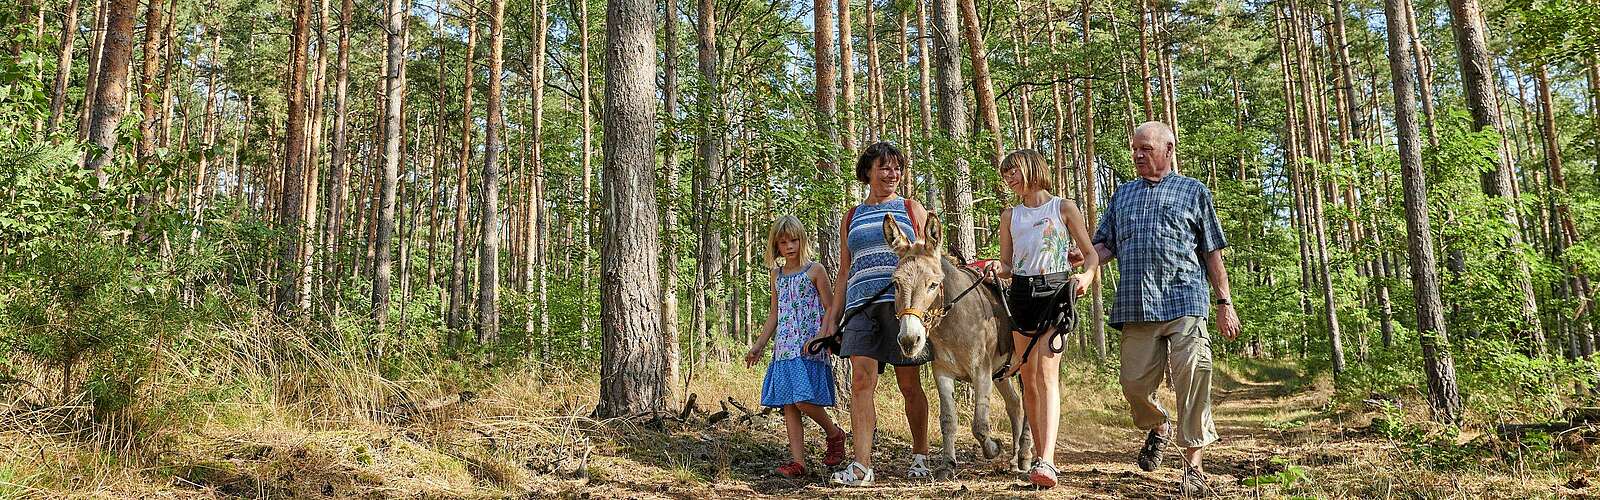 Wandern mit Esel,
        
    

        Foto: TMB Fotoarchiv/Florian Trykowski